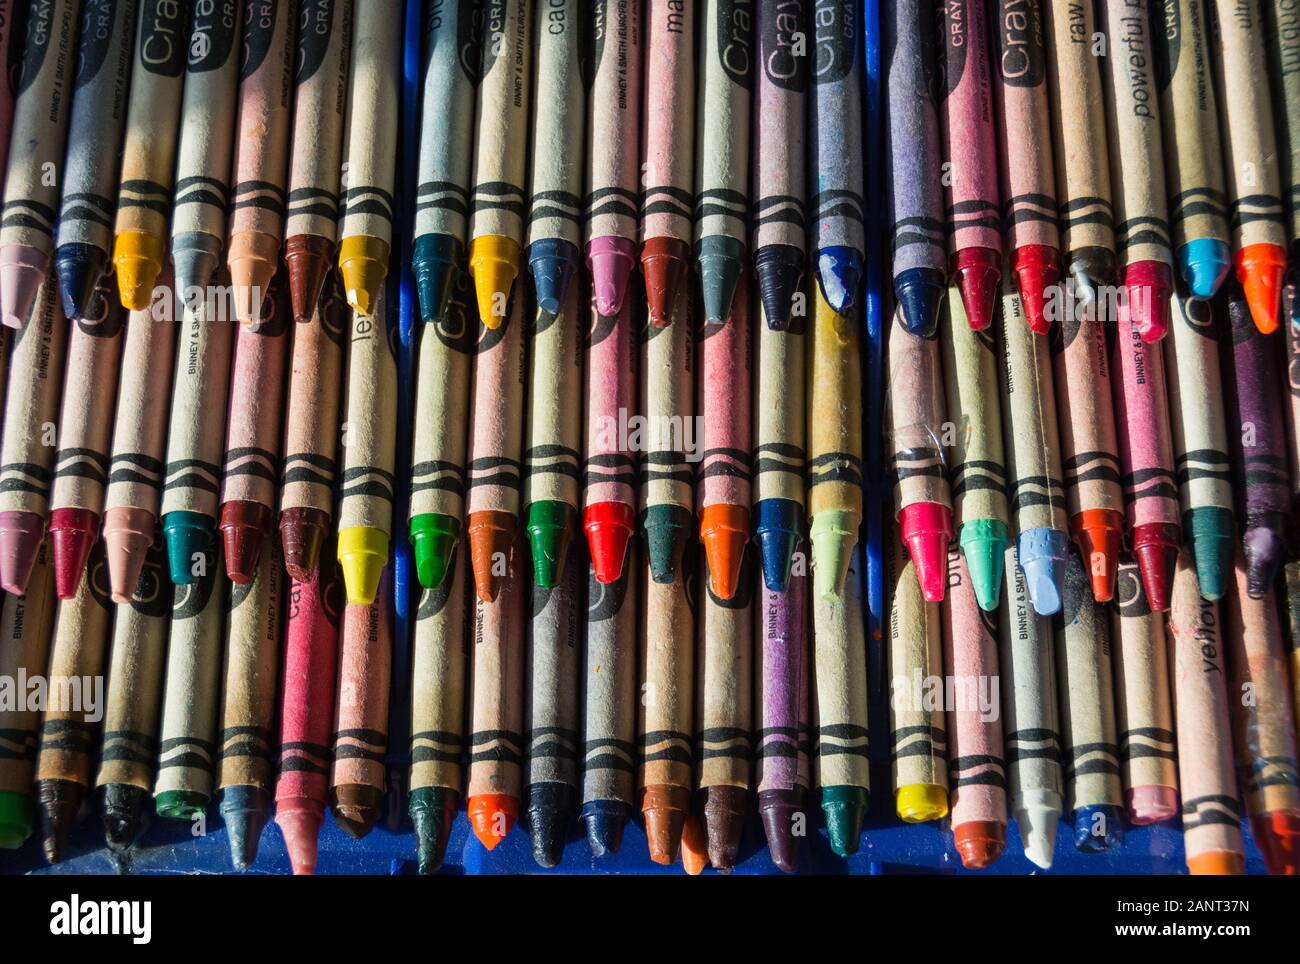 Les crayons de cire Crayola colorés Banque D'Images